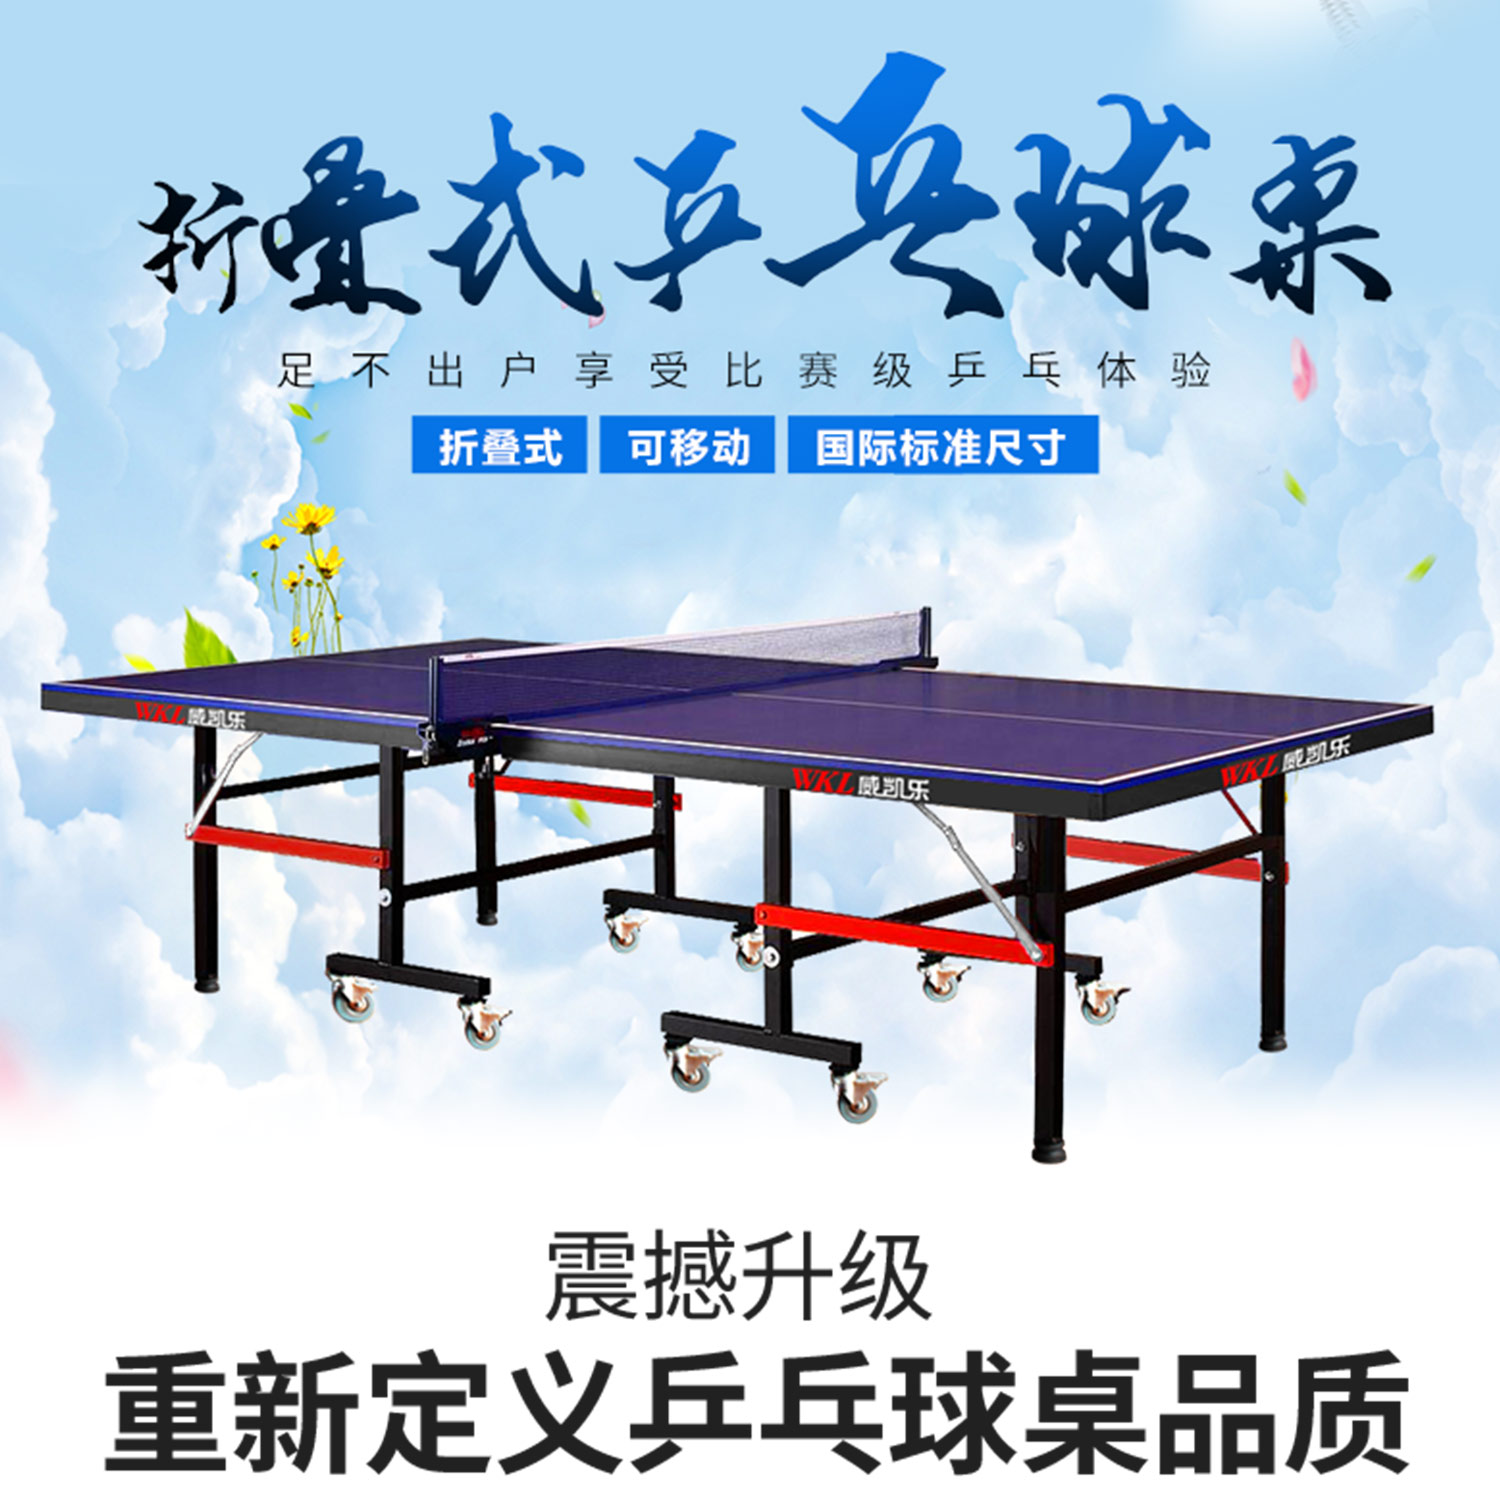 威凱樂專業乒乓球桌室內家用可折疊標準可移動比賽乒乓球臺送上門